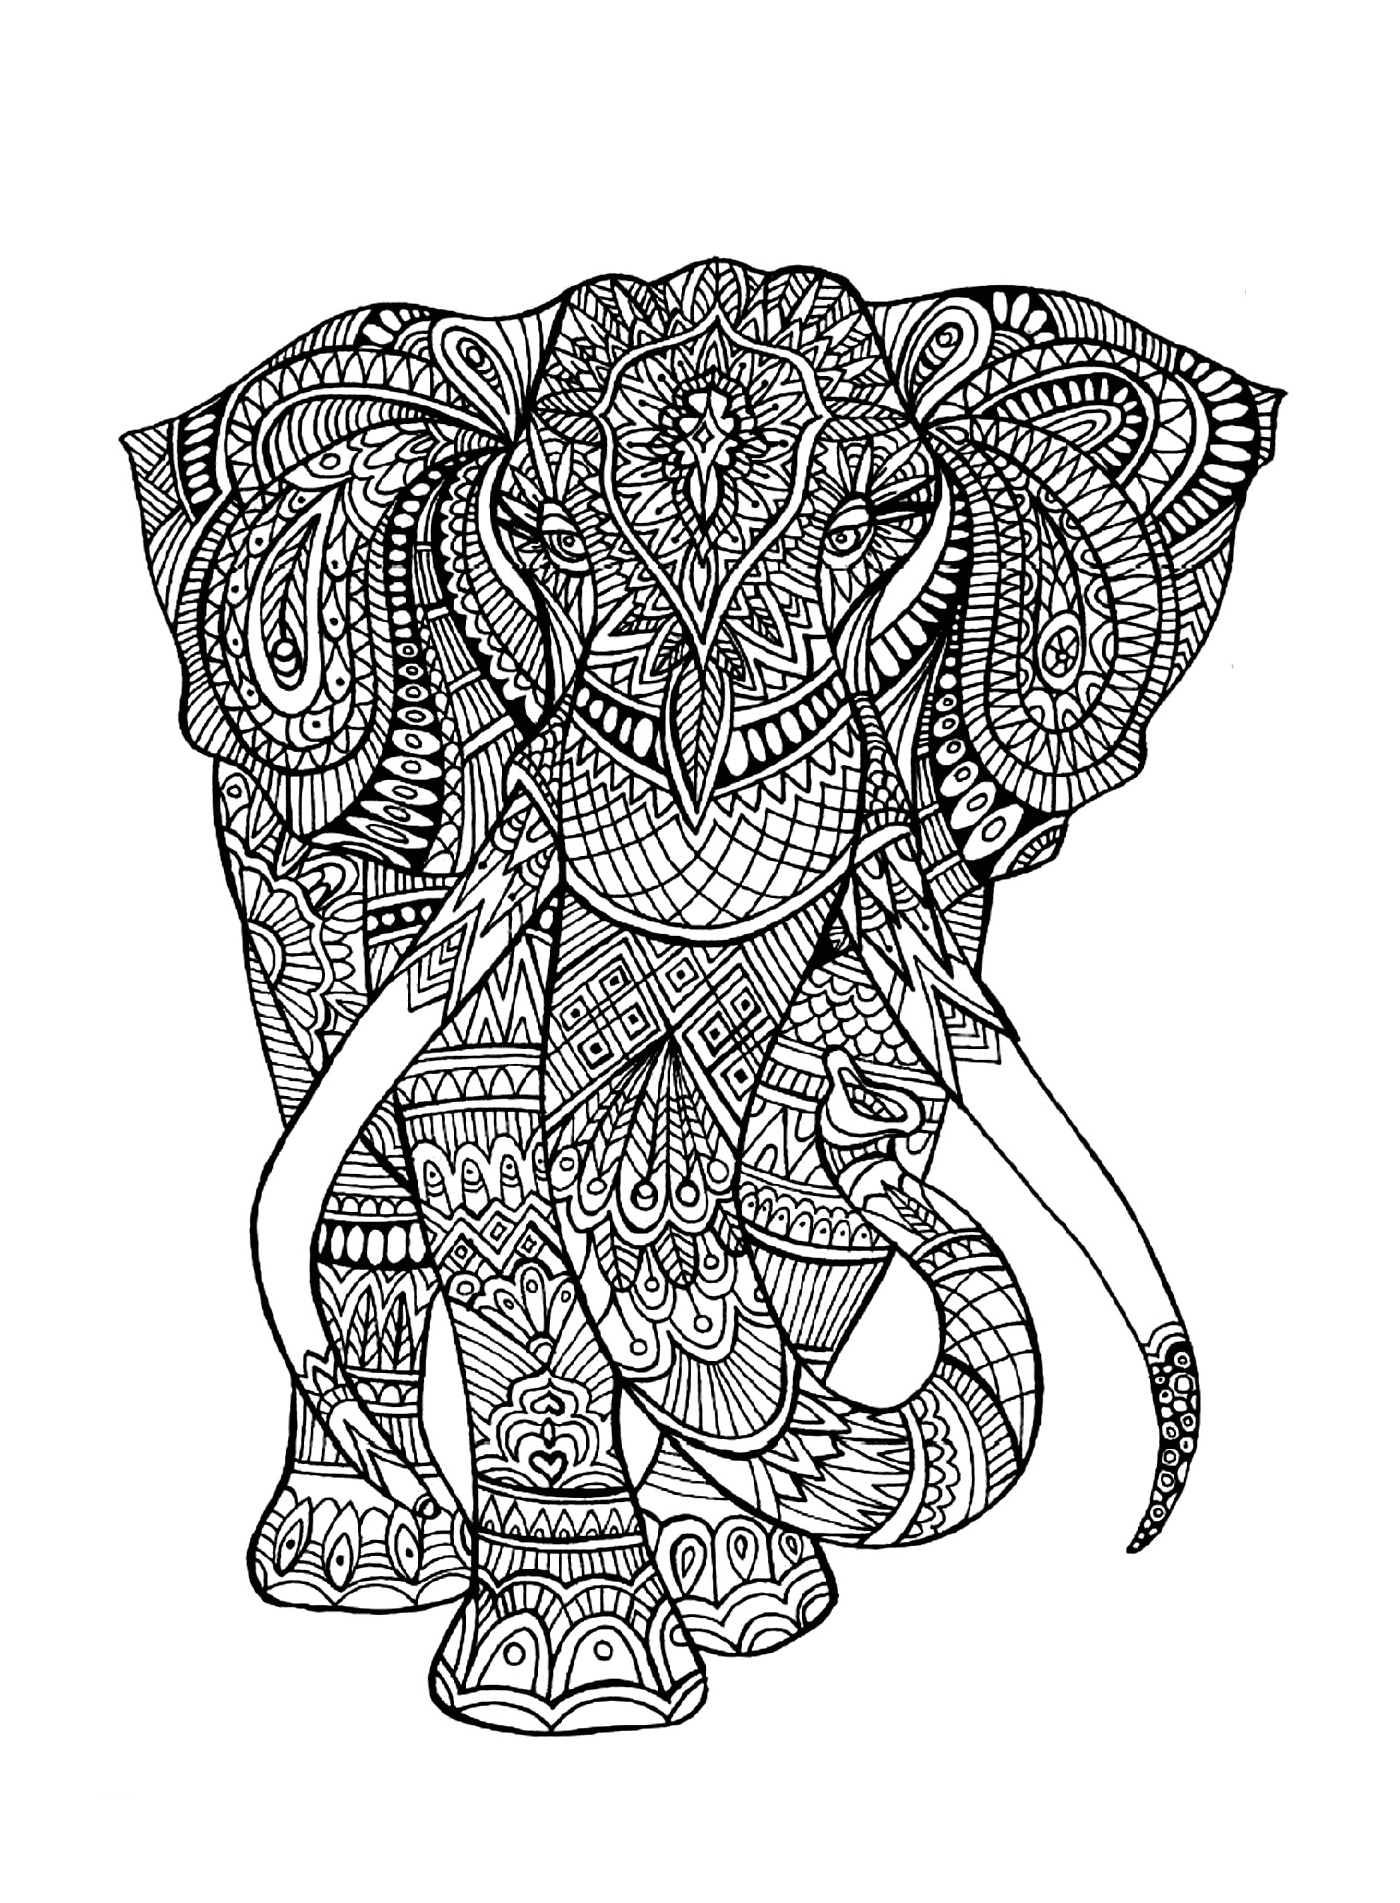  Слон со сложными закономерностями на его теле 